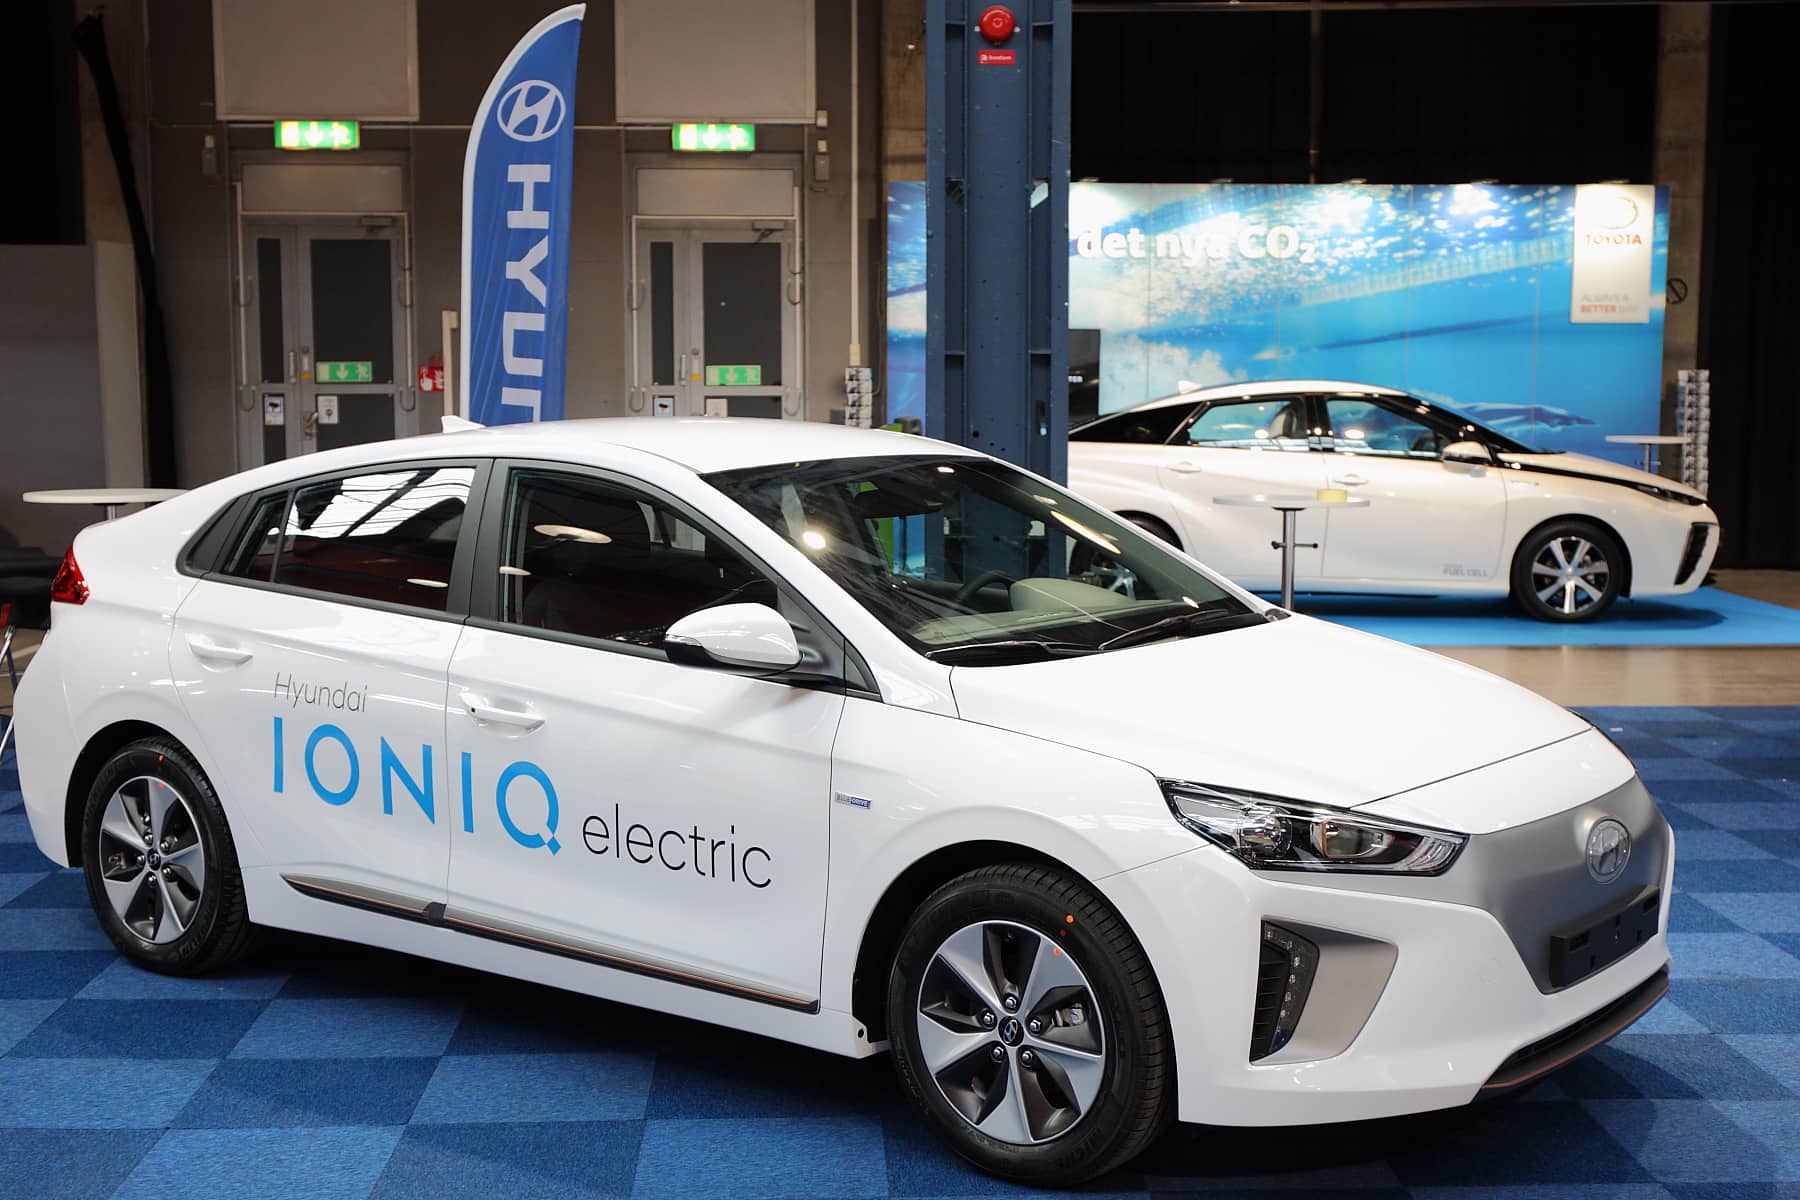 Hyundai Ioniq já sendo vendido na Suécia